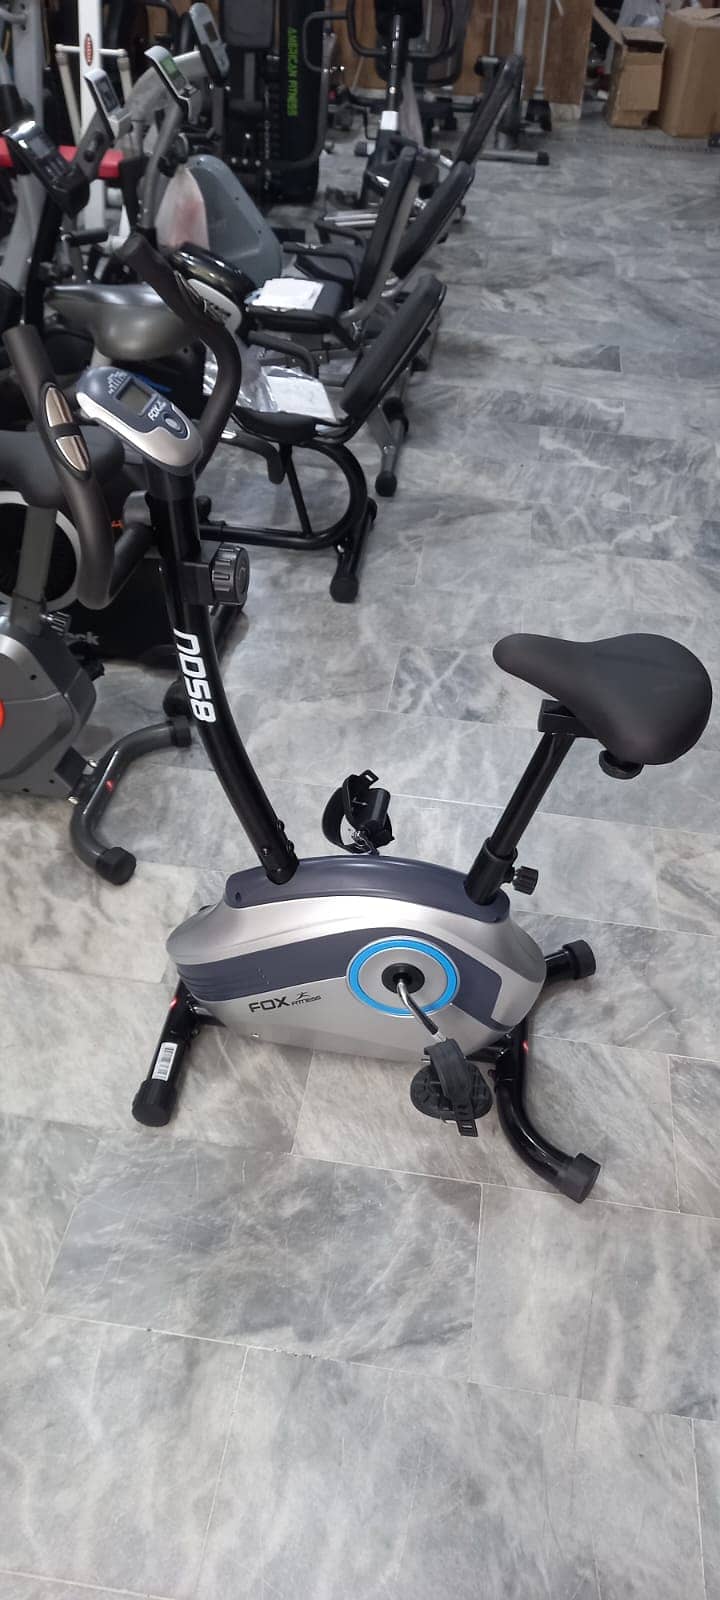 eliptical | Exercise Bike |Up Right bike| treadmill |Spin bike dumbbel 16